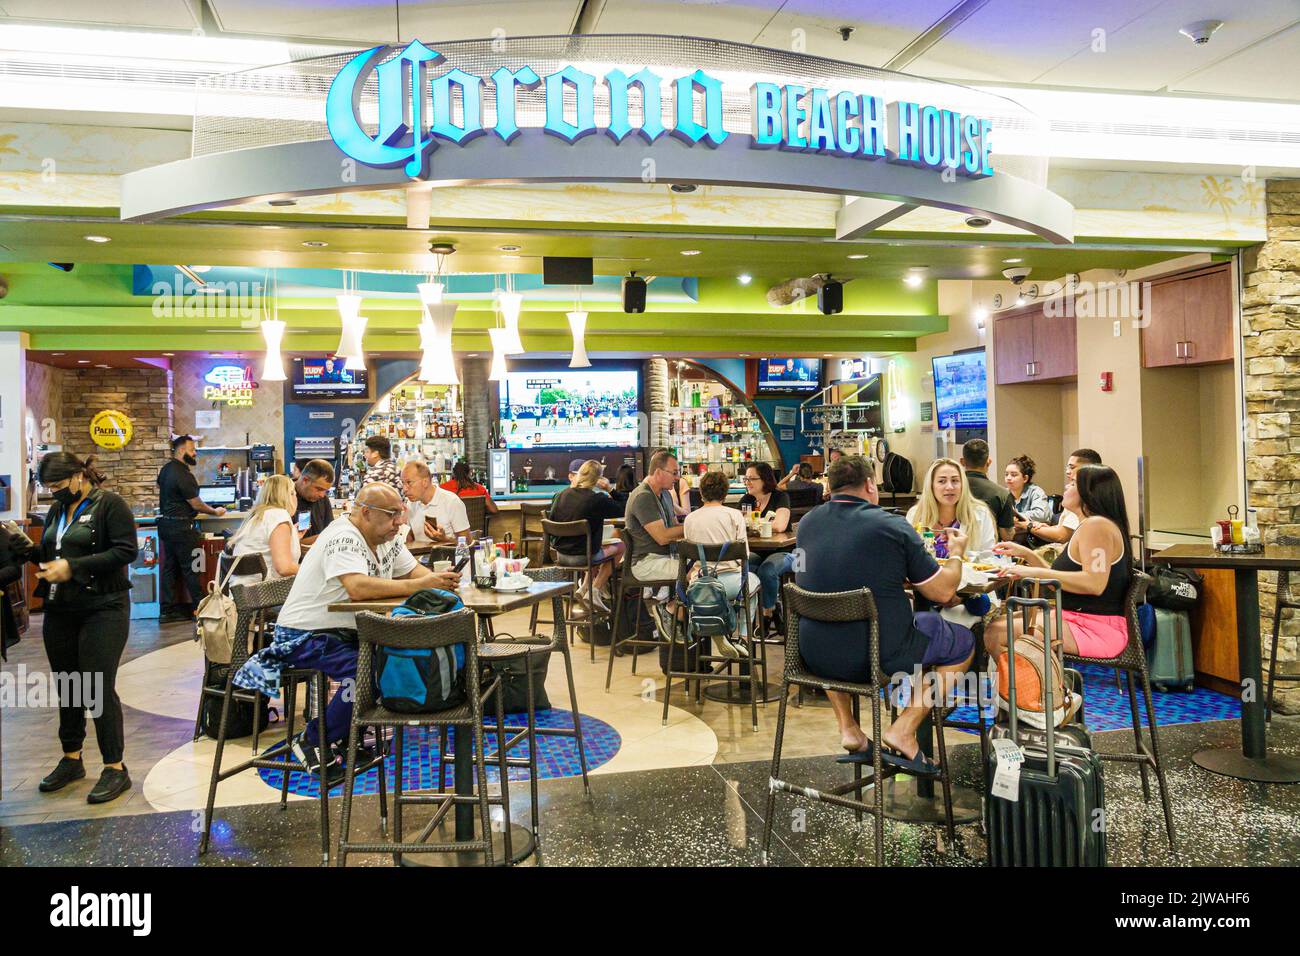 Miami Florida, aeropuerto internacional de Miami MIA terminal concourse zona de puerta, restaurante restaurantes cenar comer fuera, cafés, cafés, bistró bist Foto de stock